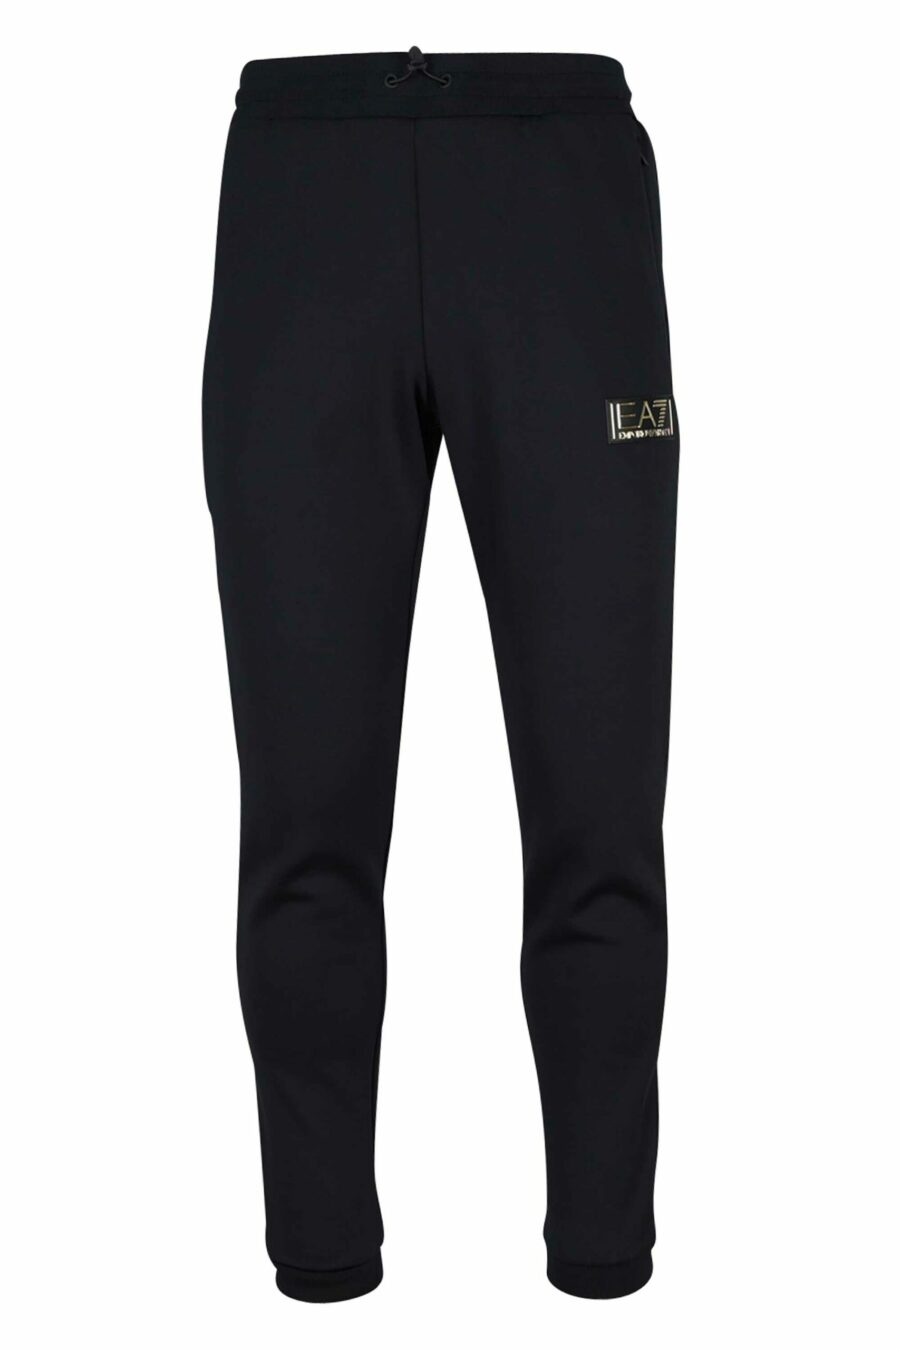 Pantalón de chándal negro con logo placa "lux identity" dorado - 8056787947160 scaled